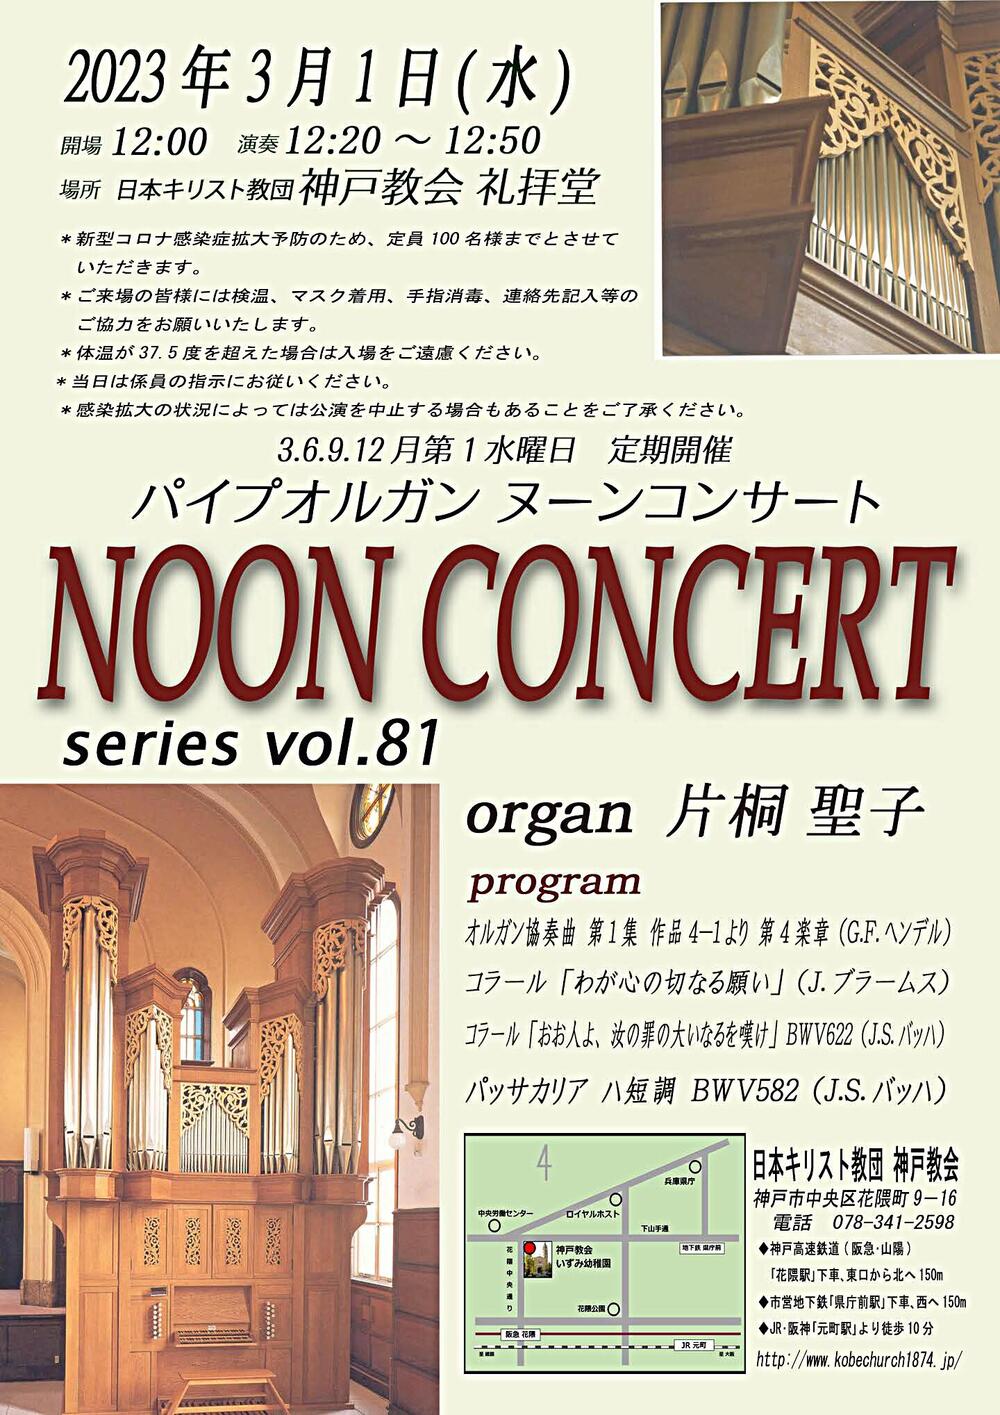 パイプオルガン ヌーンコンサート series vol.81